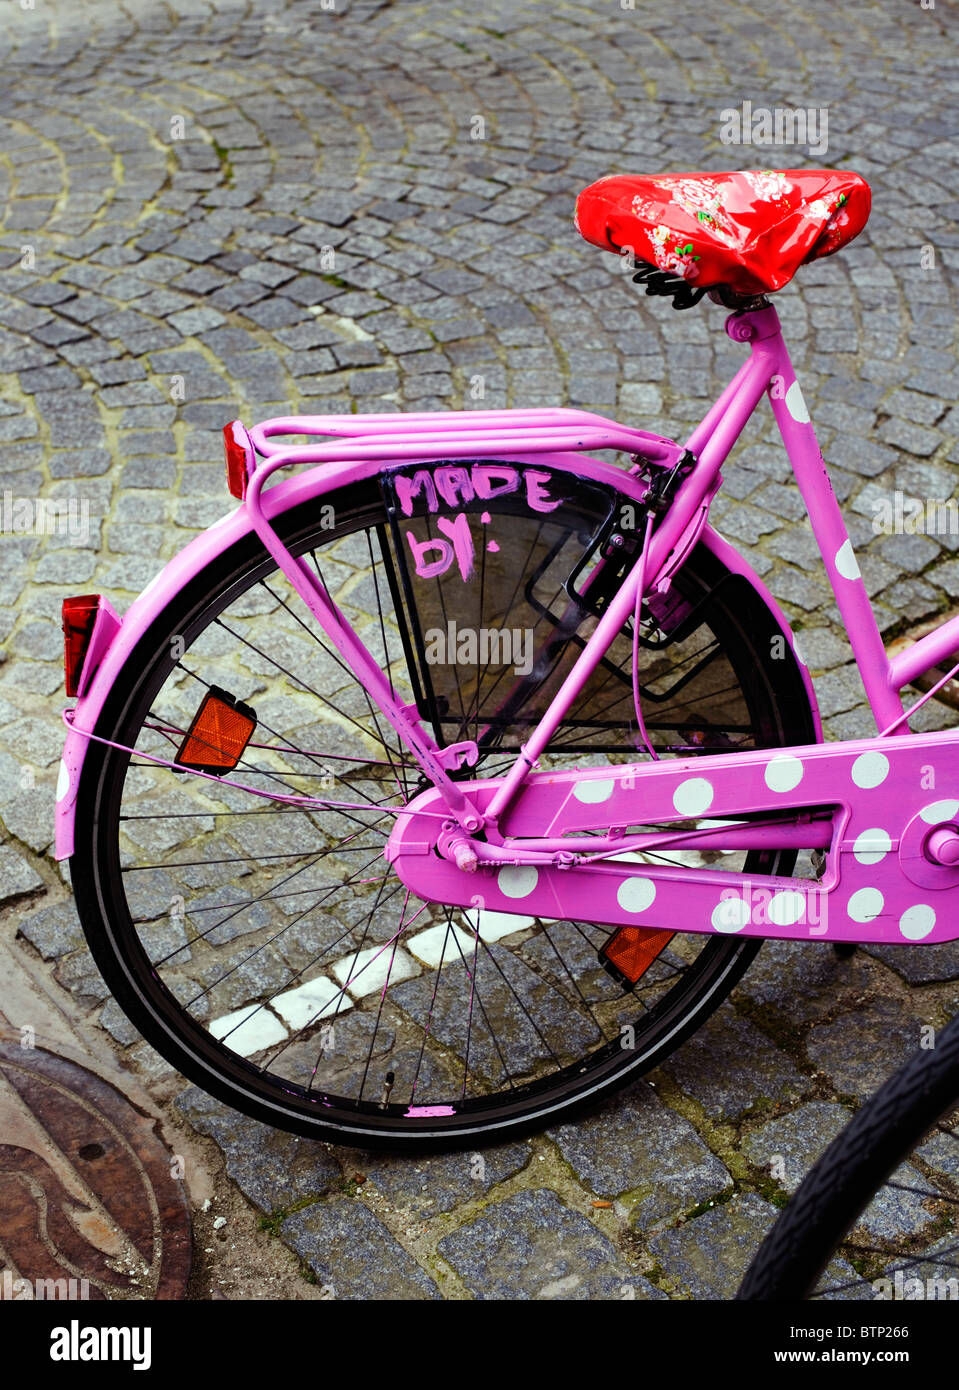 Dekorierte Pink Lady Fahrrad, Brügge, Belgien, Europa Stockfoto